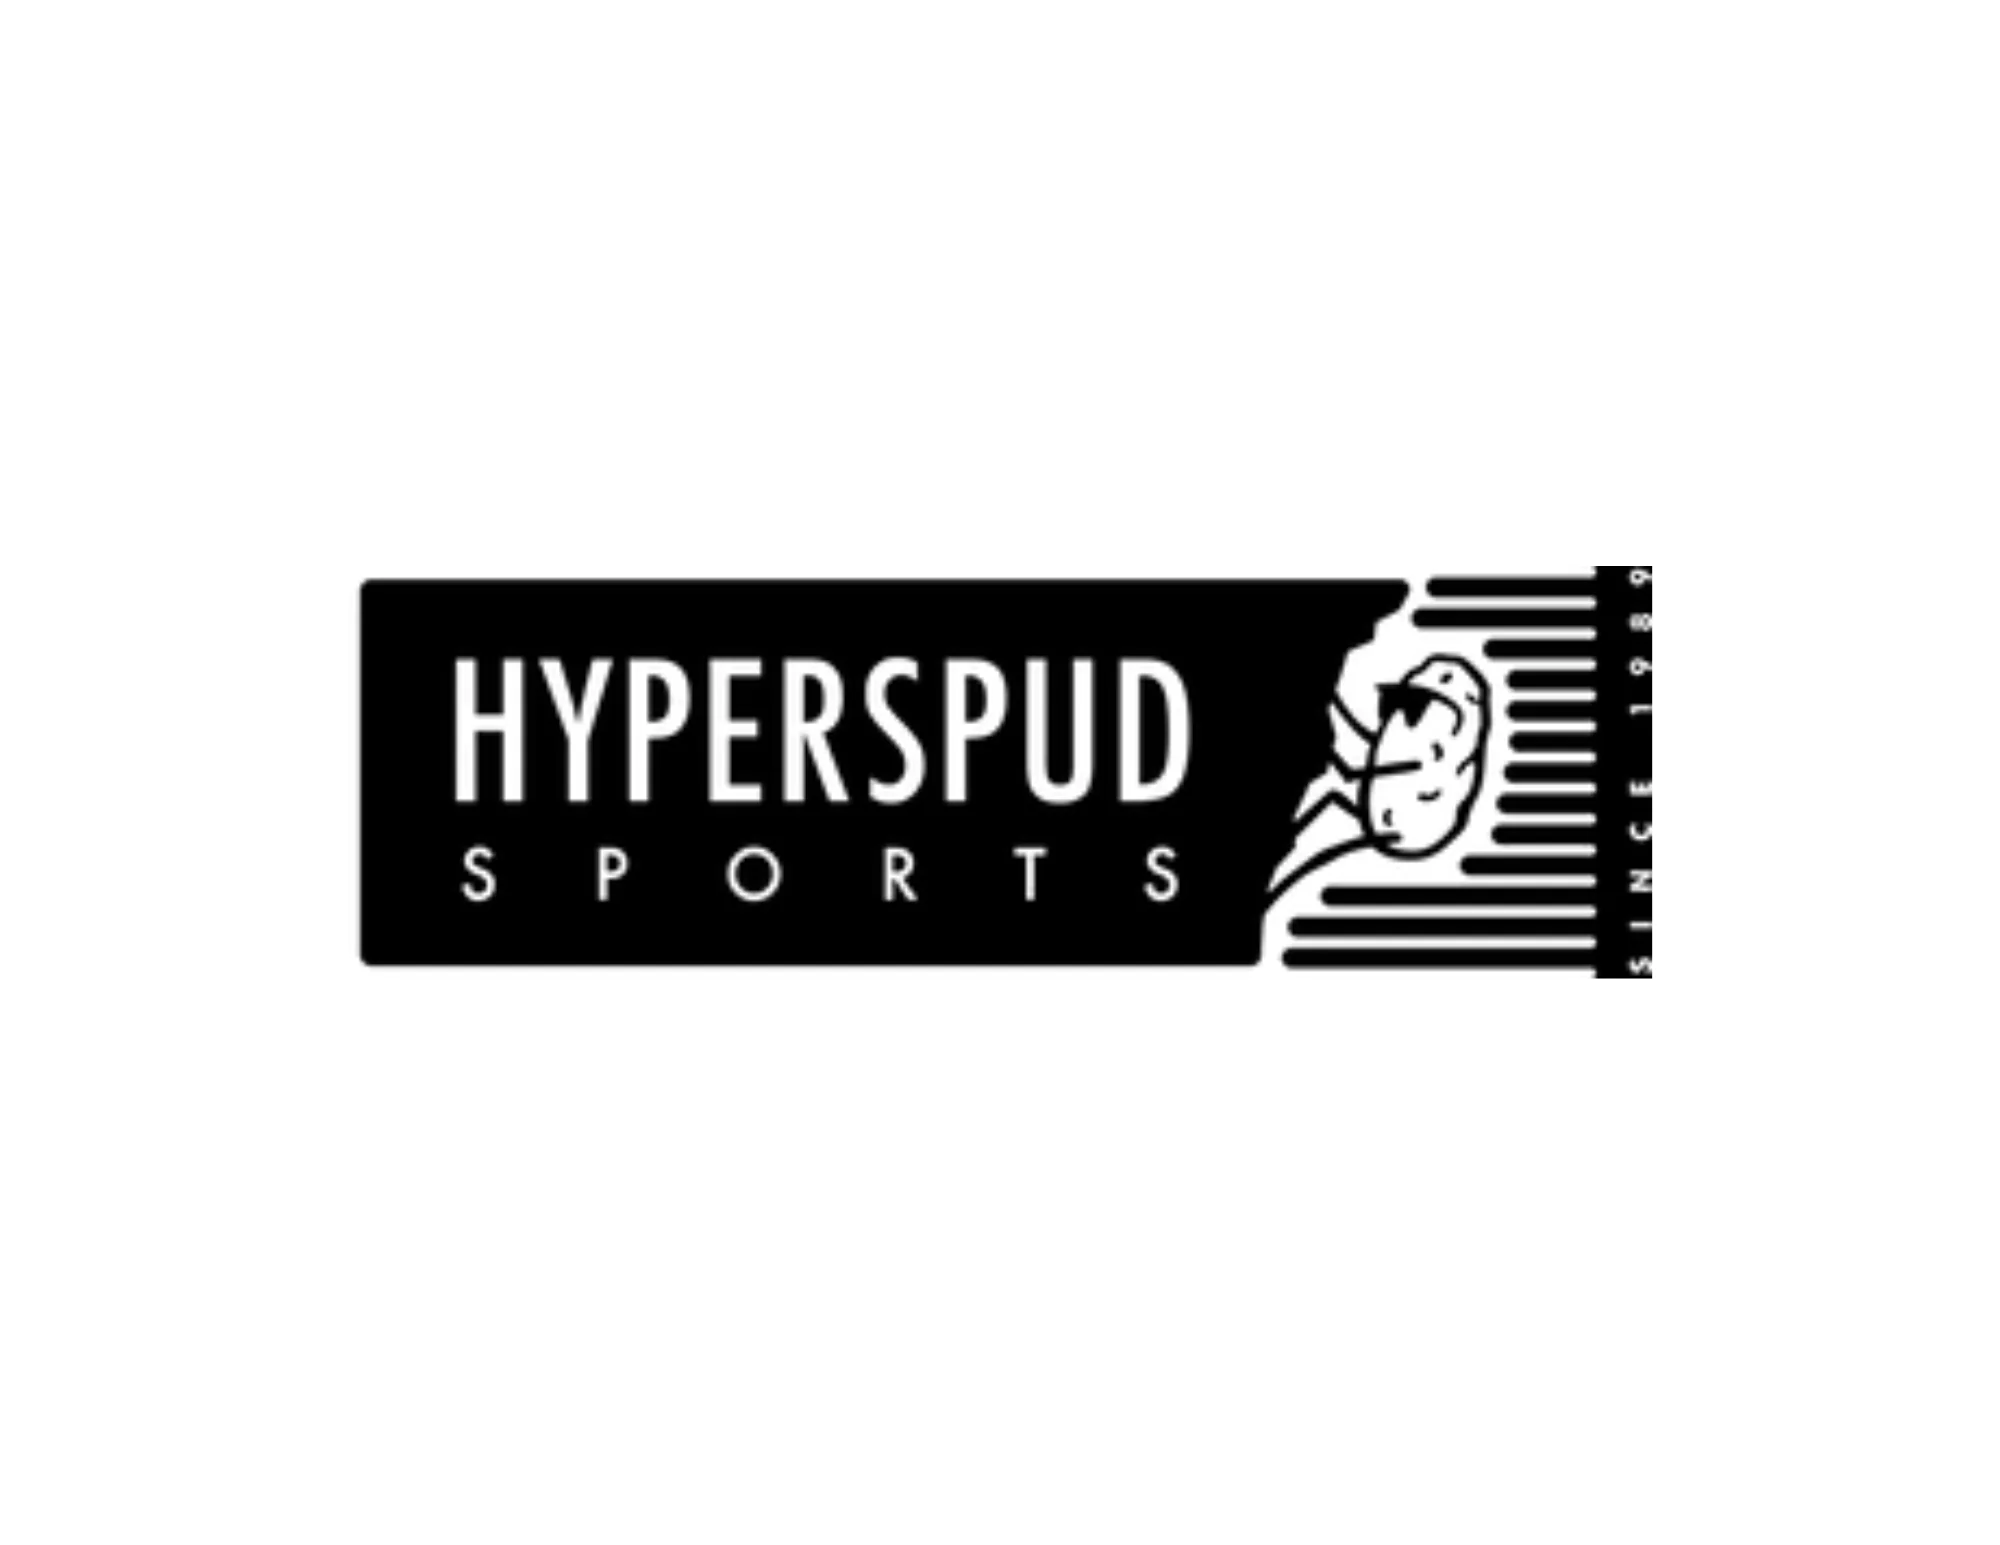 Hyperspud Sports